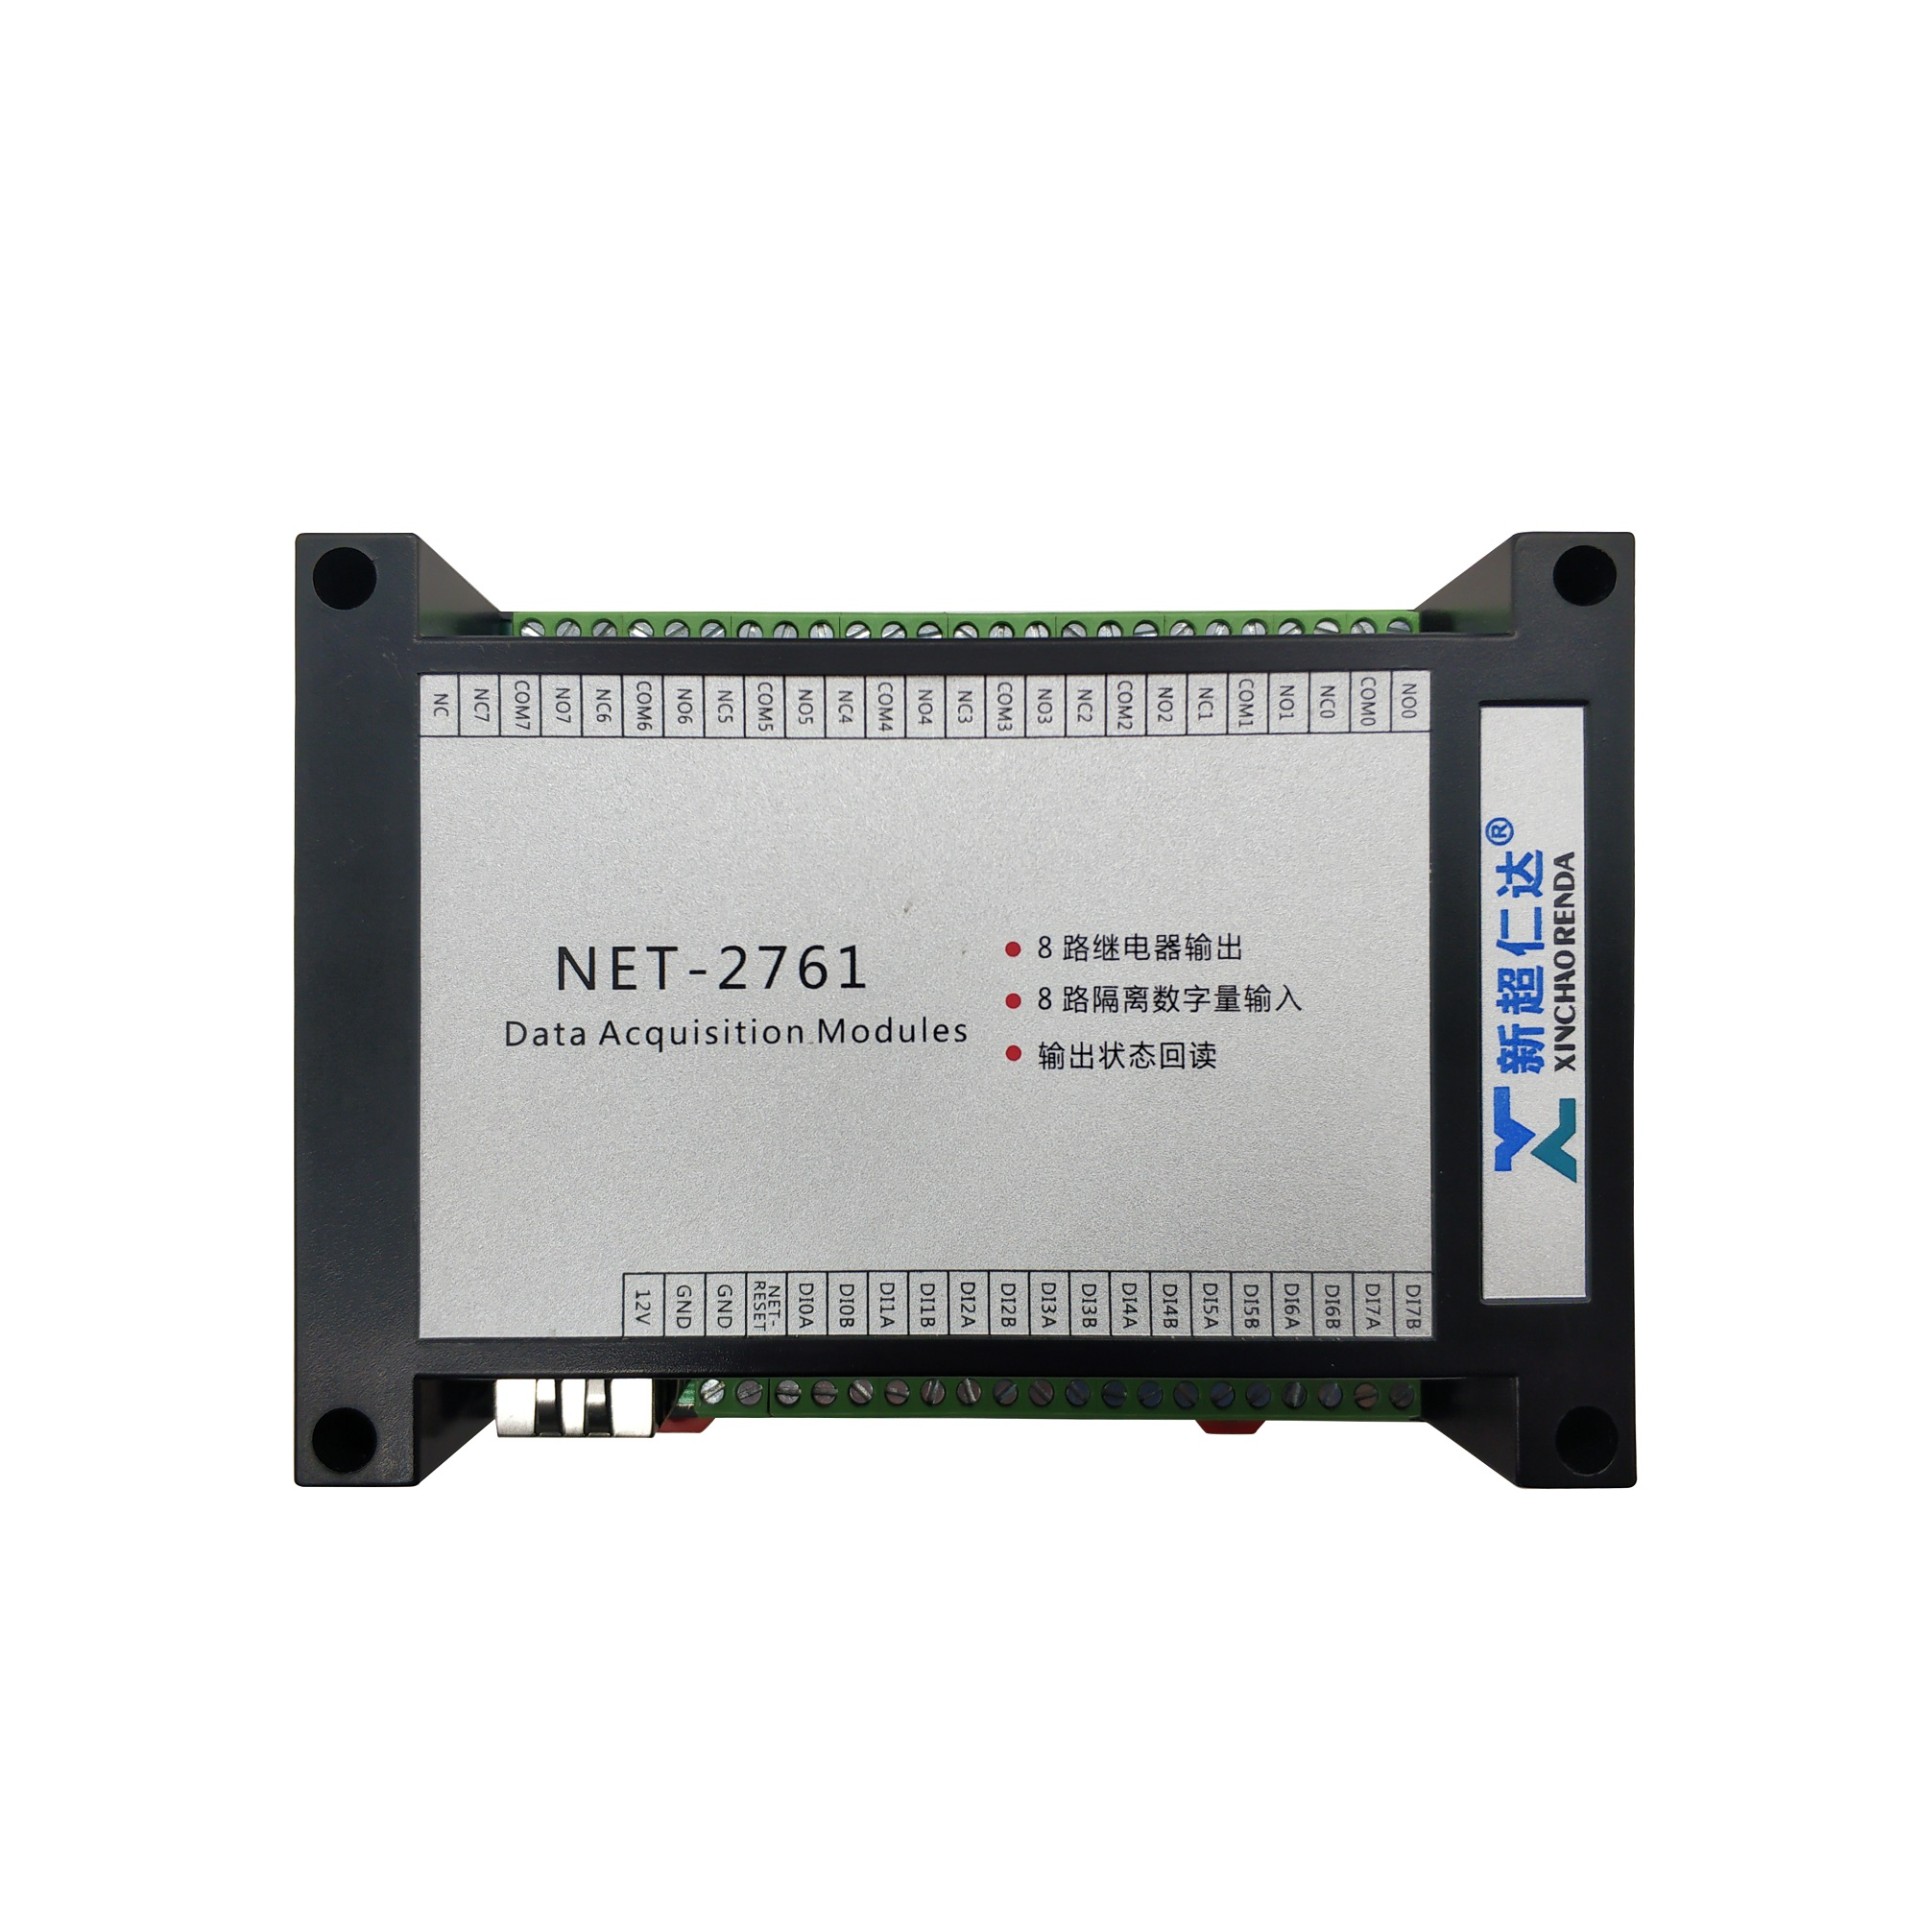 NET-2761